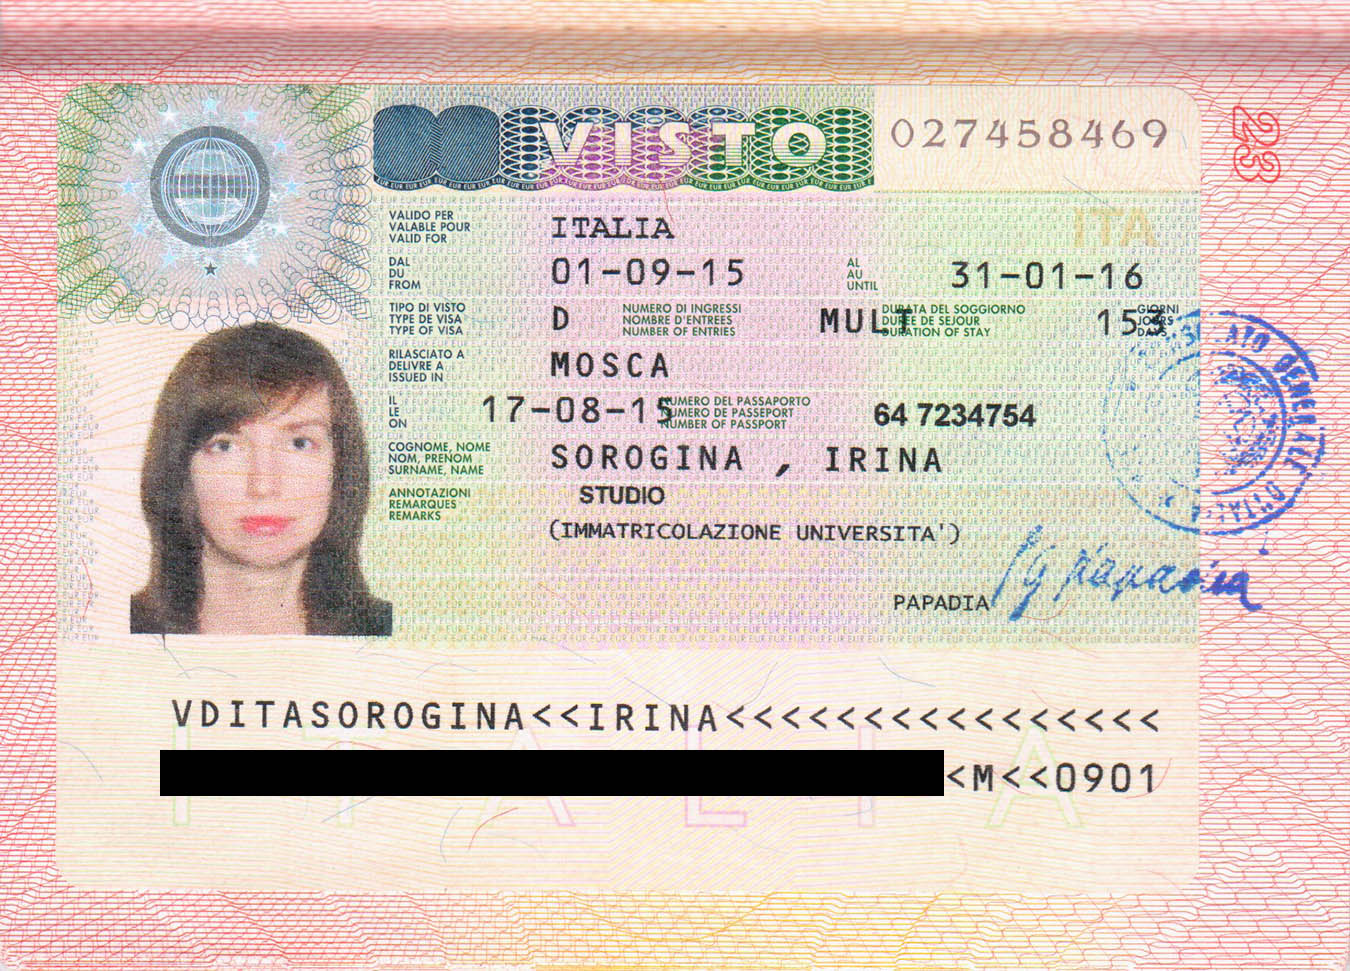 Как получить визу в италию в санкт-петербурге